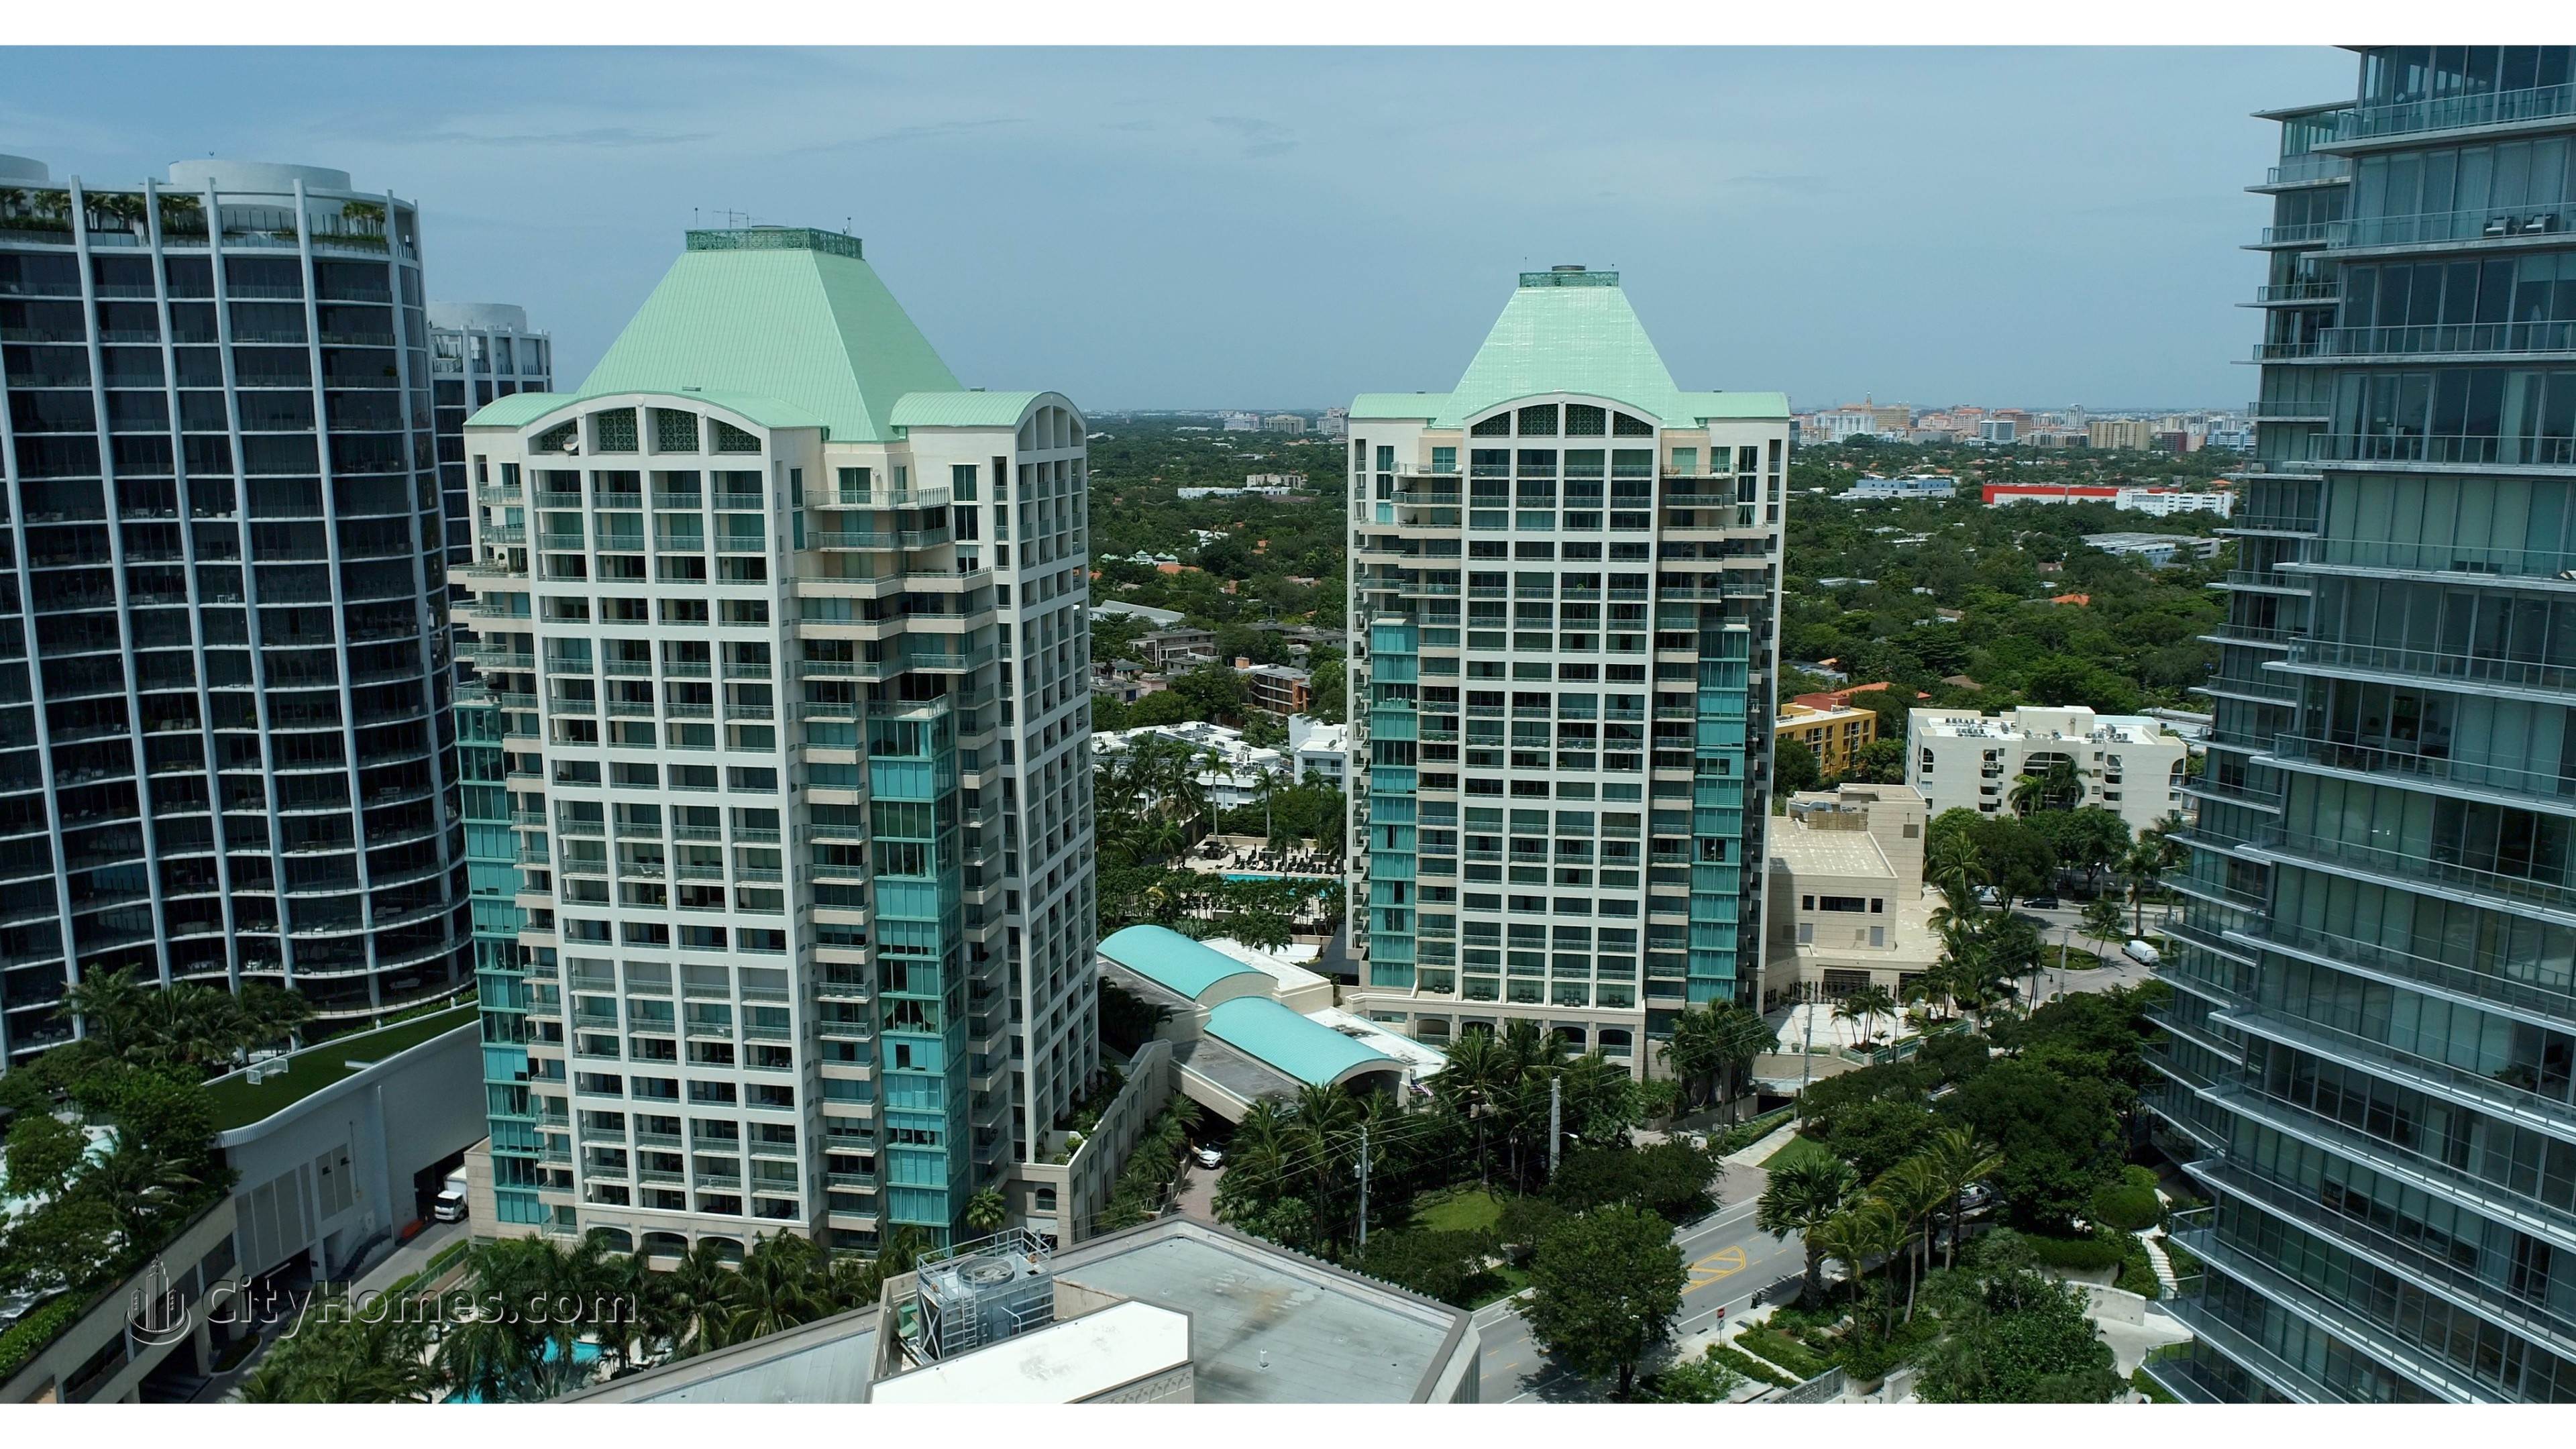 Ritz-Carlton Coconut Grove здание в 3300 And 3350 SW 27th Avenue, Miami, FL 33133